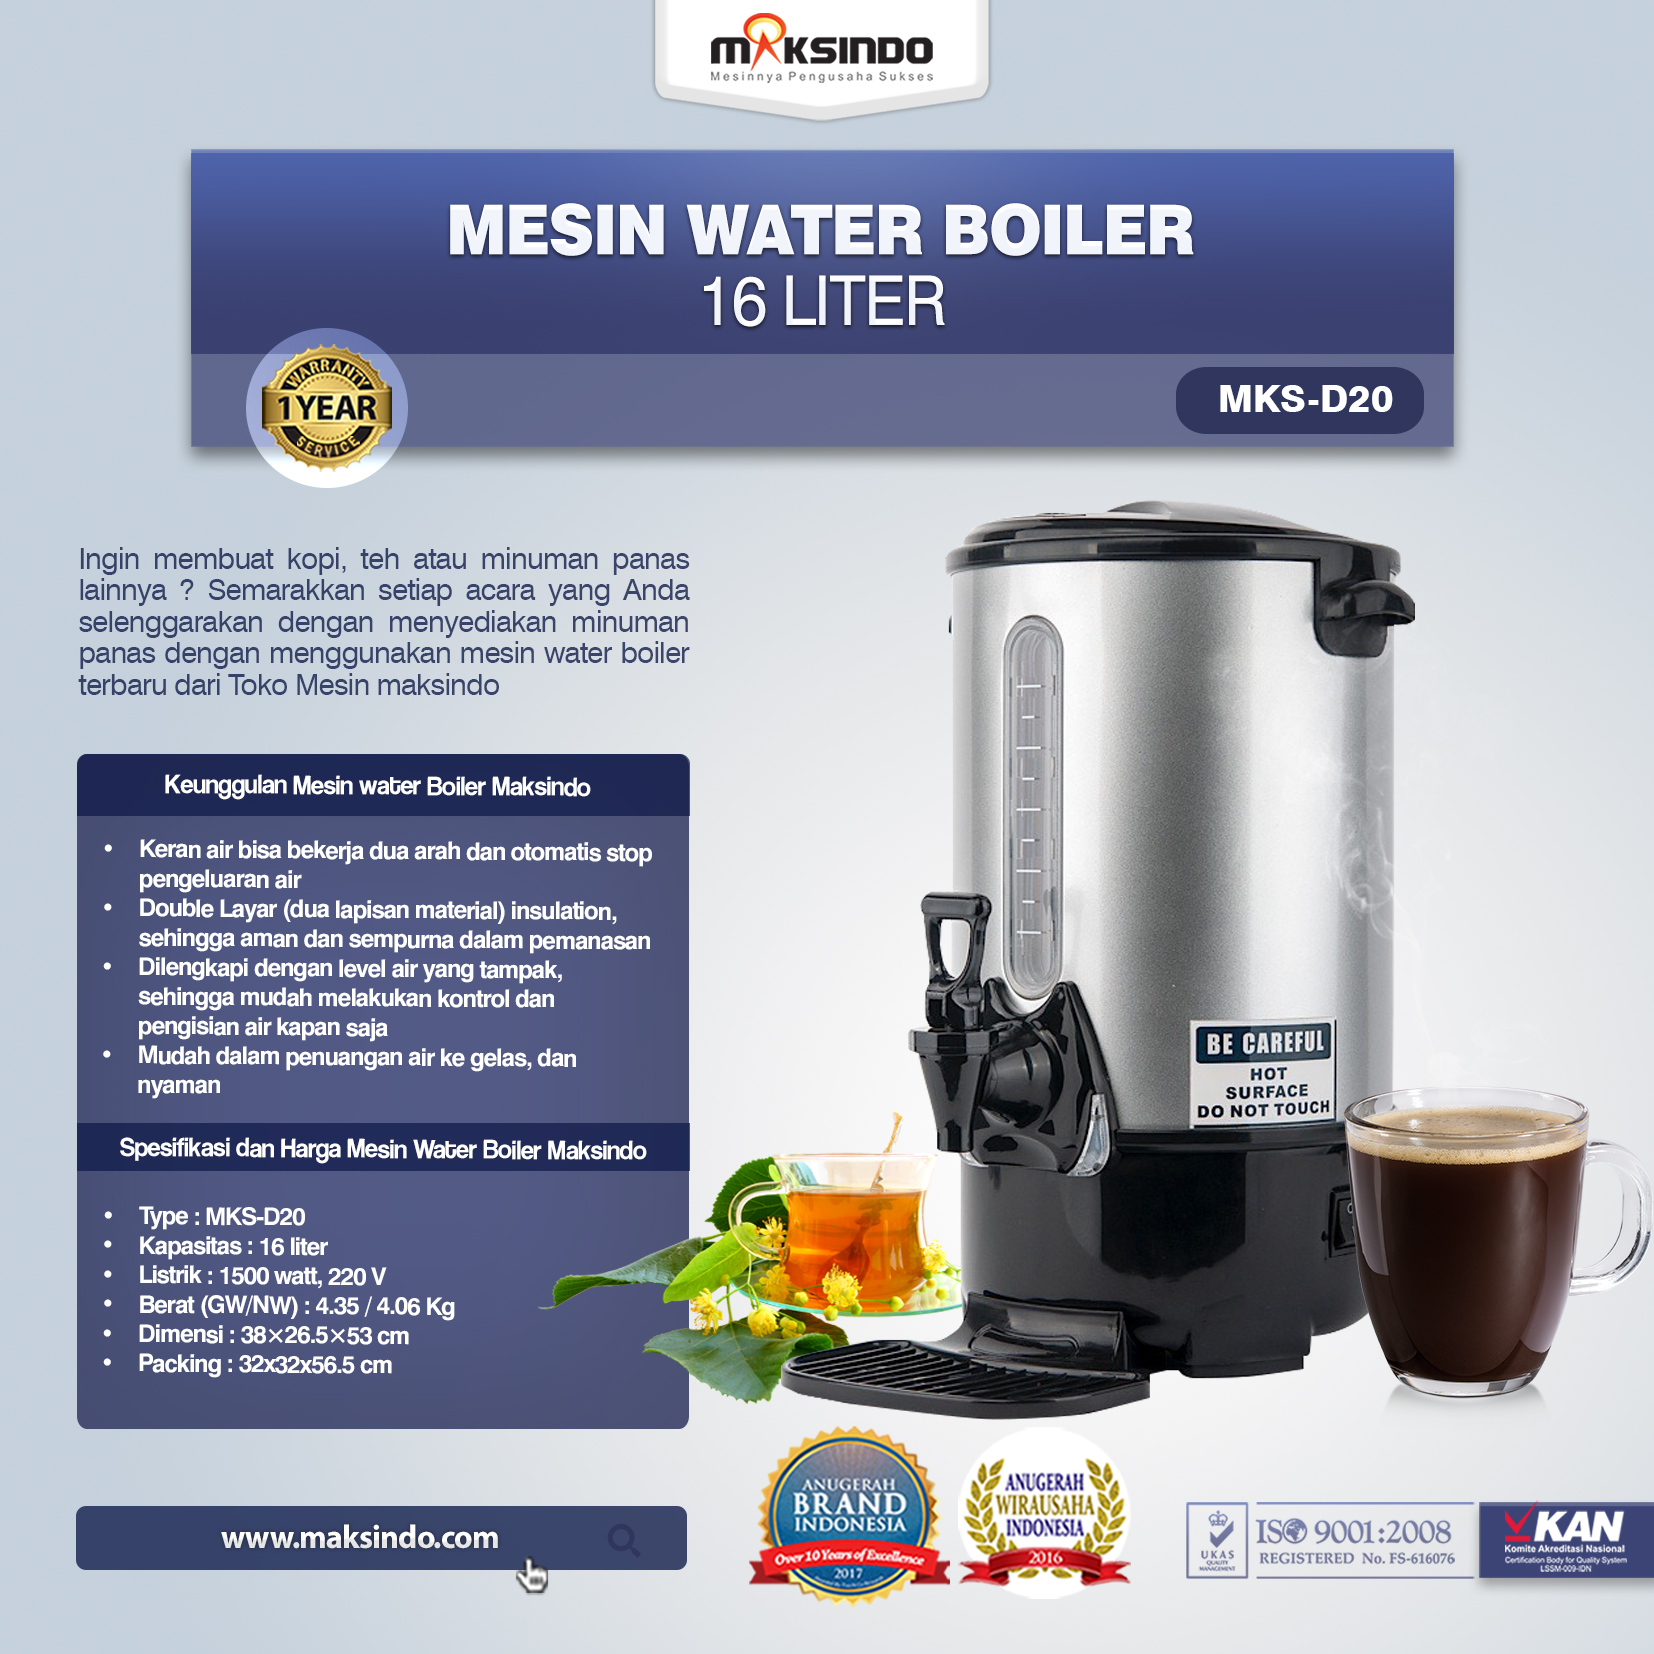 Jual Mesin Water Boiler (MKS-D20) di Solo